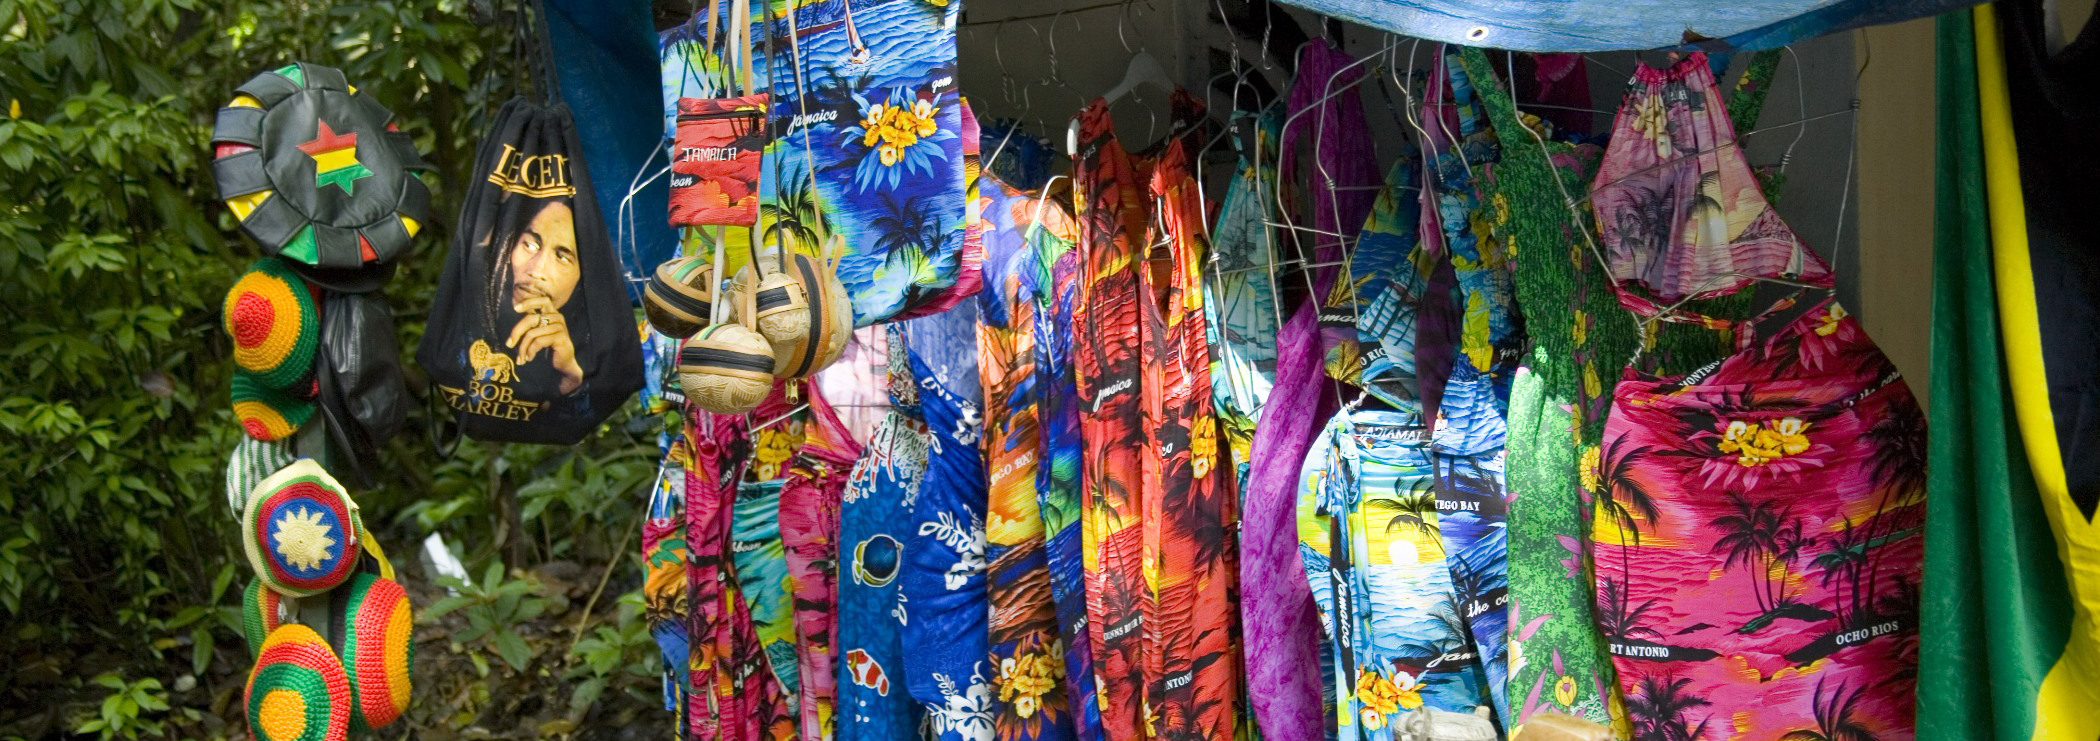 Souvenirstand auf Jamaica mit bunten Kleidern, Mützen und Taschen